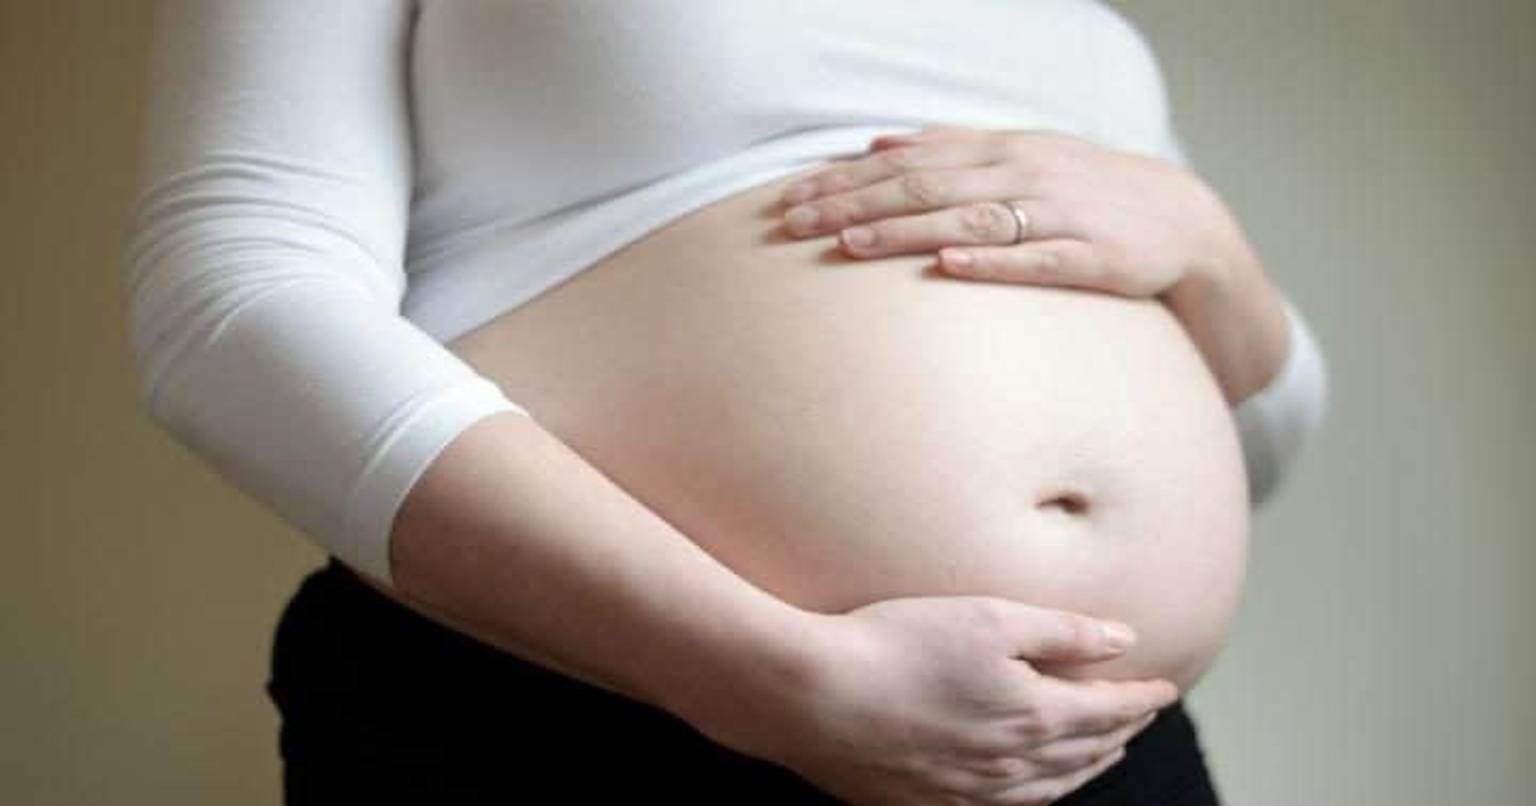 इस गर्भवती महिला के पेट के अंदर दिखा कुछ ऐसा नजारा, देख महिला हुई हैरान, चकराए डॉक्टर्स